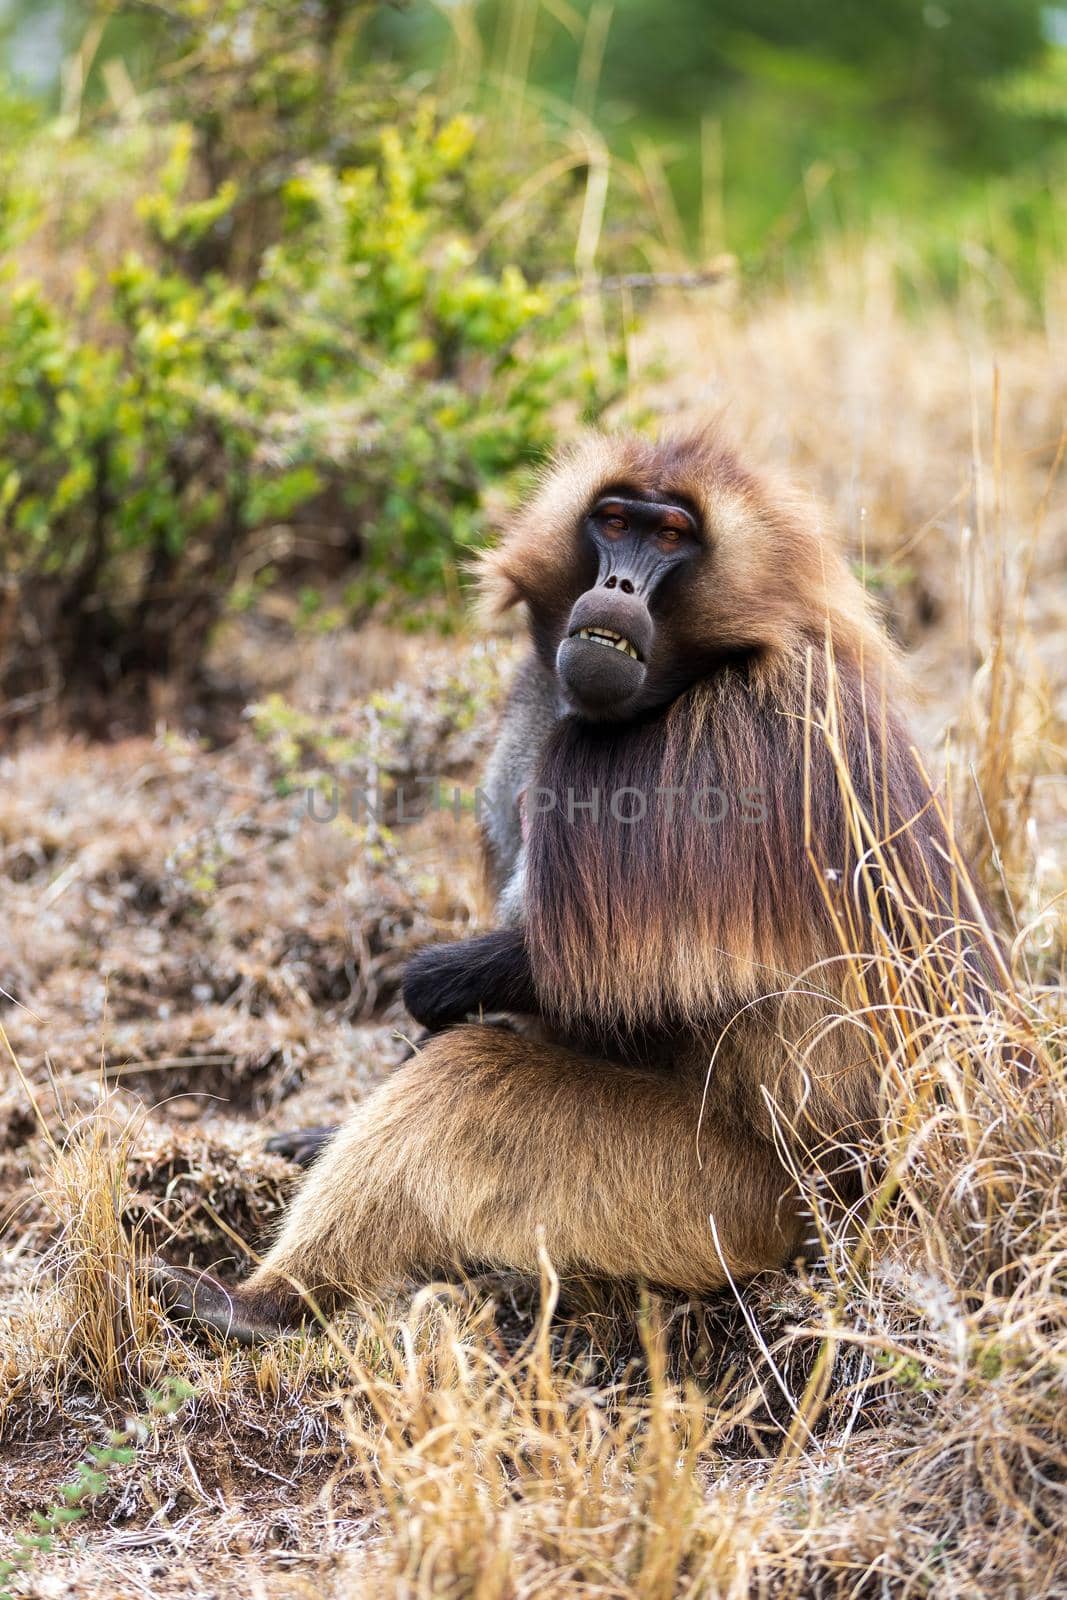 endemic monkey Gelada in Simien mountain, Ethiopia by artush